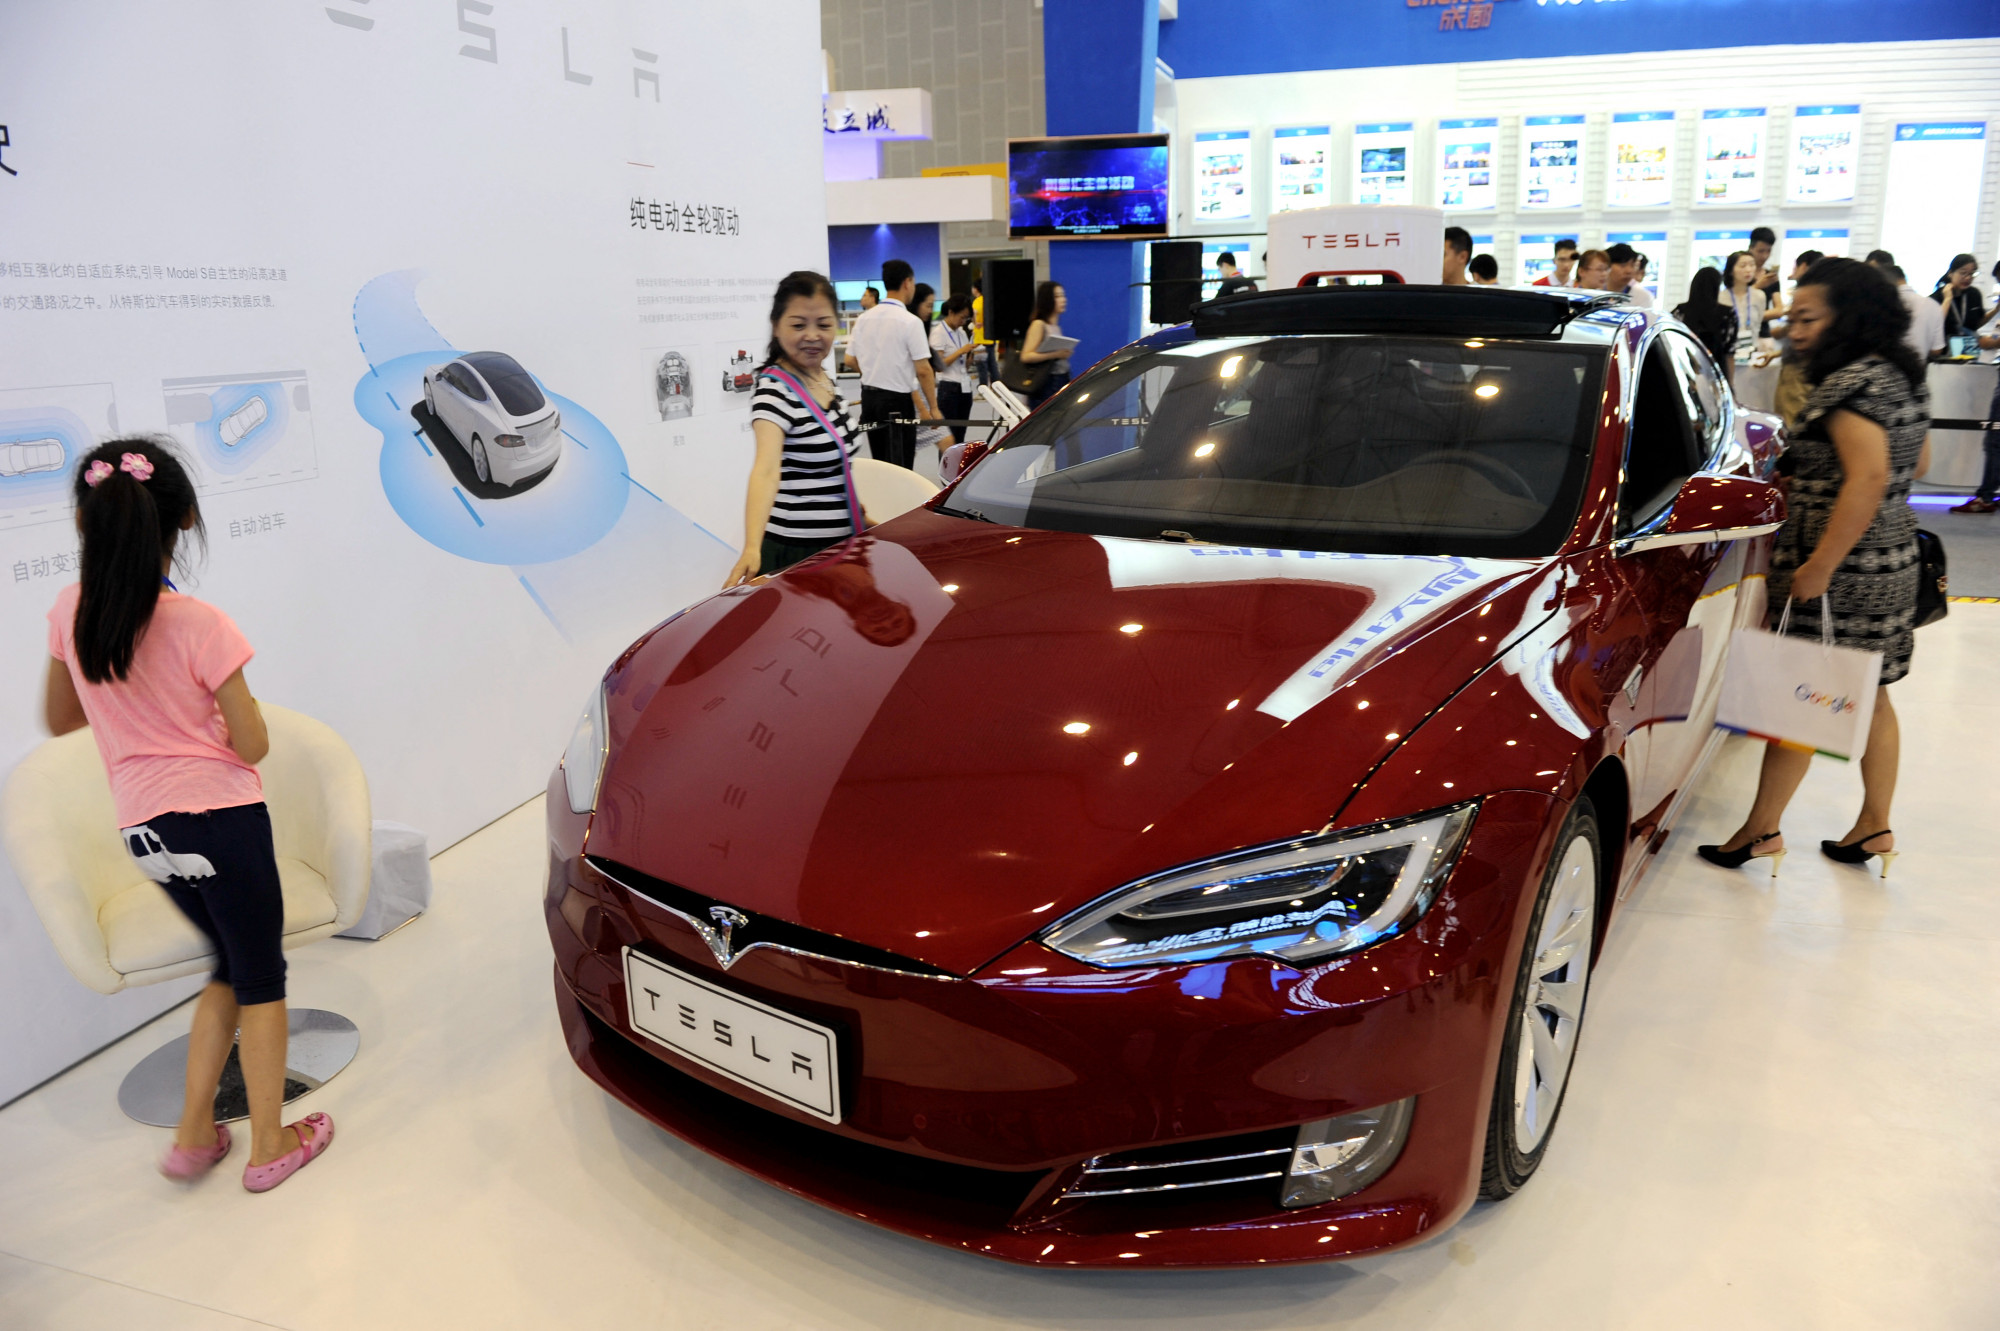 Háborognak a kínai vásárlók, amiért most sokkal olcsóbb a Tesla, mint amikor ők vették